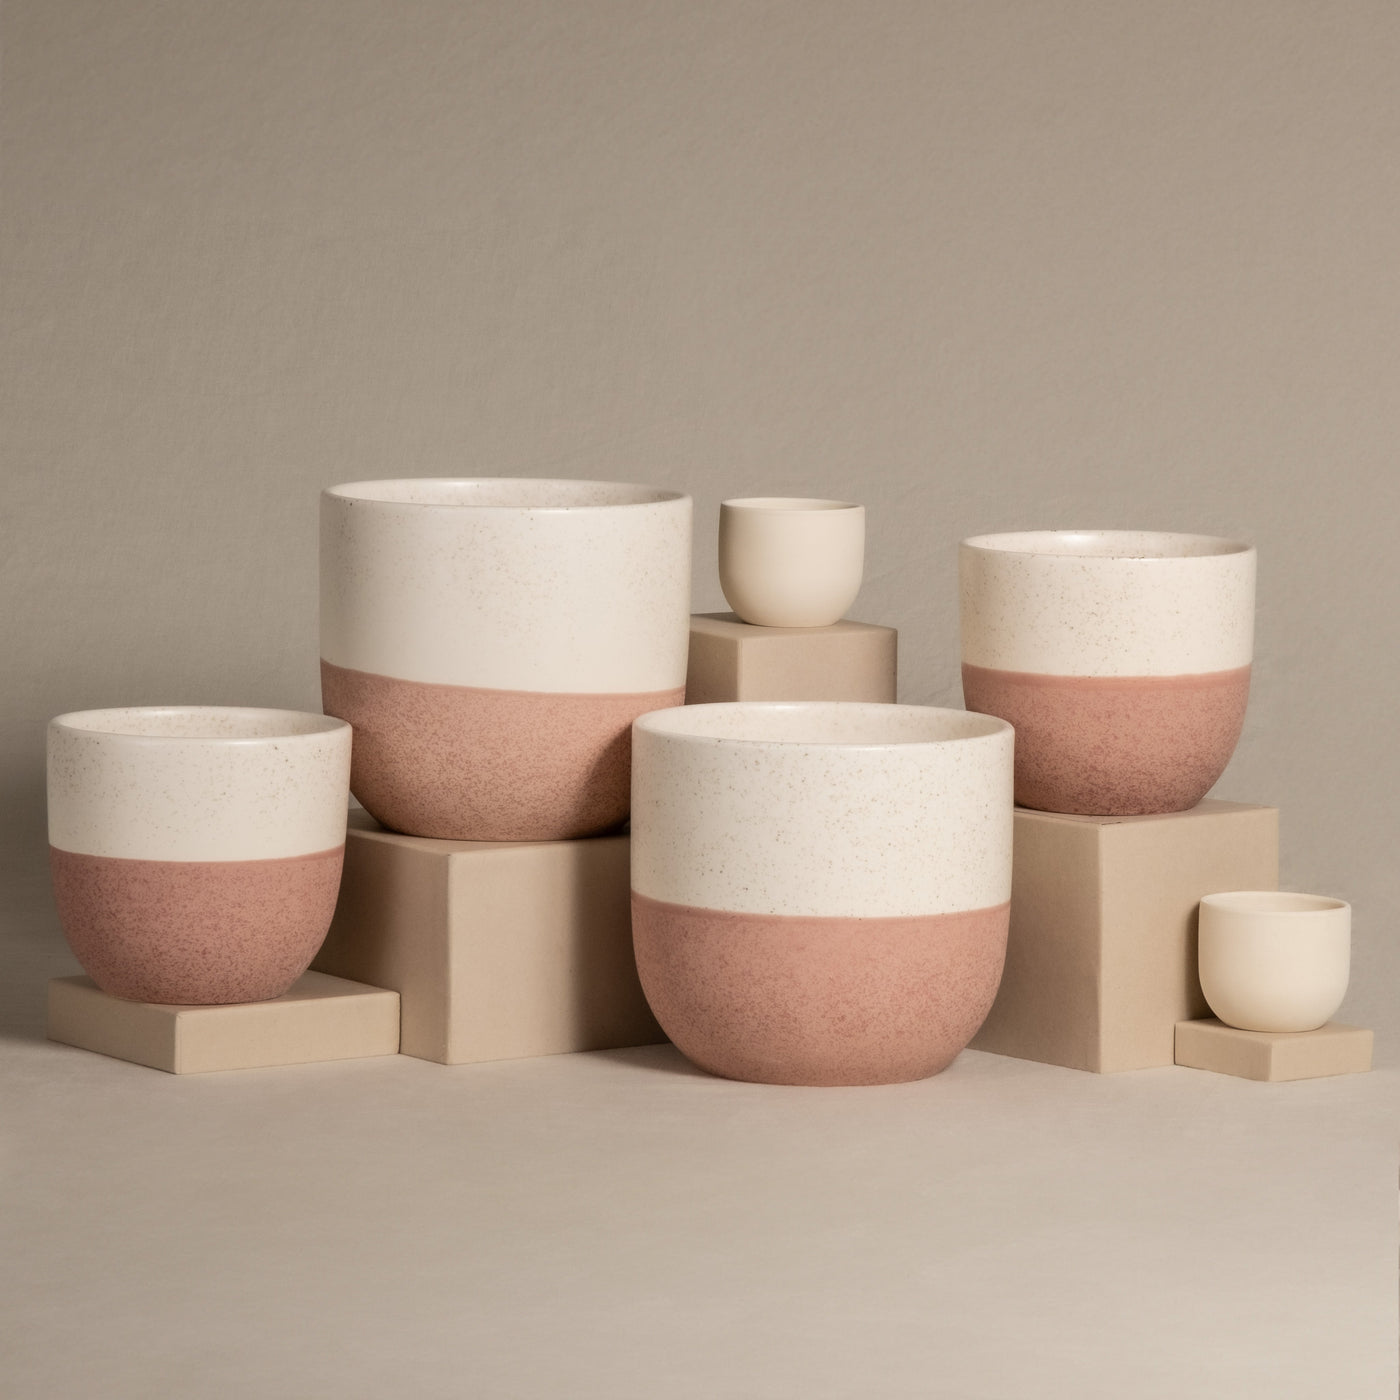 Set aus weißen und rosa Keramik-Topfsets „Variado“ (2 × 18, 2 × 14, 2 × 7) in verschiedenen Größen, dargestellt auf beigen Blöcken vor neutralem Hintergrund. Die Pflanzgefäße sind zweifarbig gestaltet, wobei der obere Teil weiß und der untere Teil strukturiert rosa ist, perfekt für die Präsentation Ihrer Zimmerpflanzen.